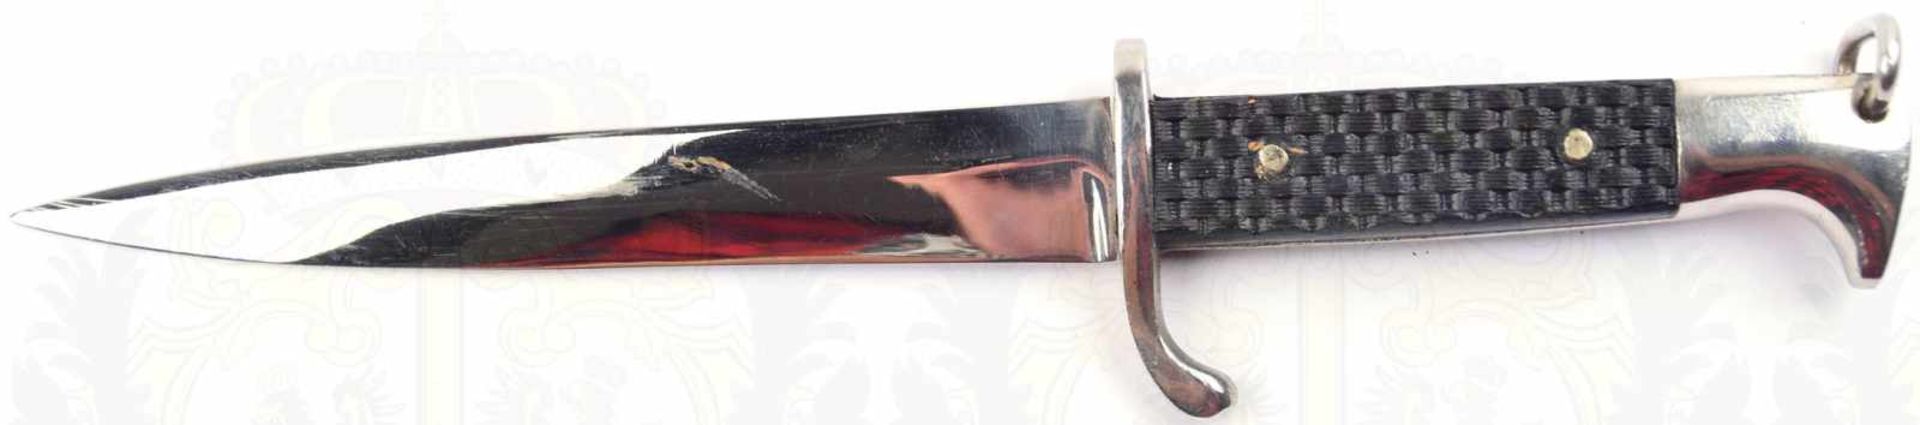 FAHRTENMESSER, vernickelte einschneidige Klinge, L. 14,5cm, Griffteile u. Scheide Eisen/ - Bild 2 aus 2